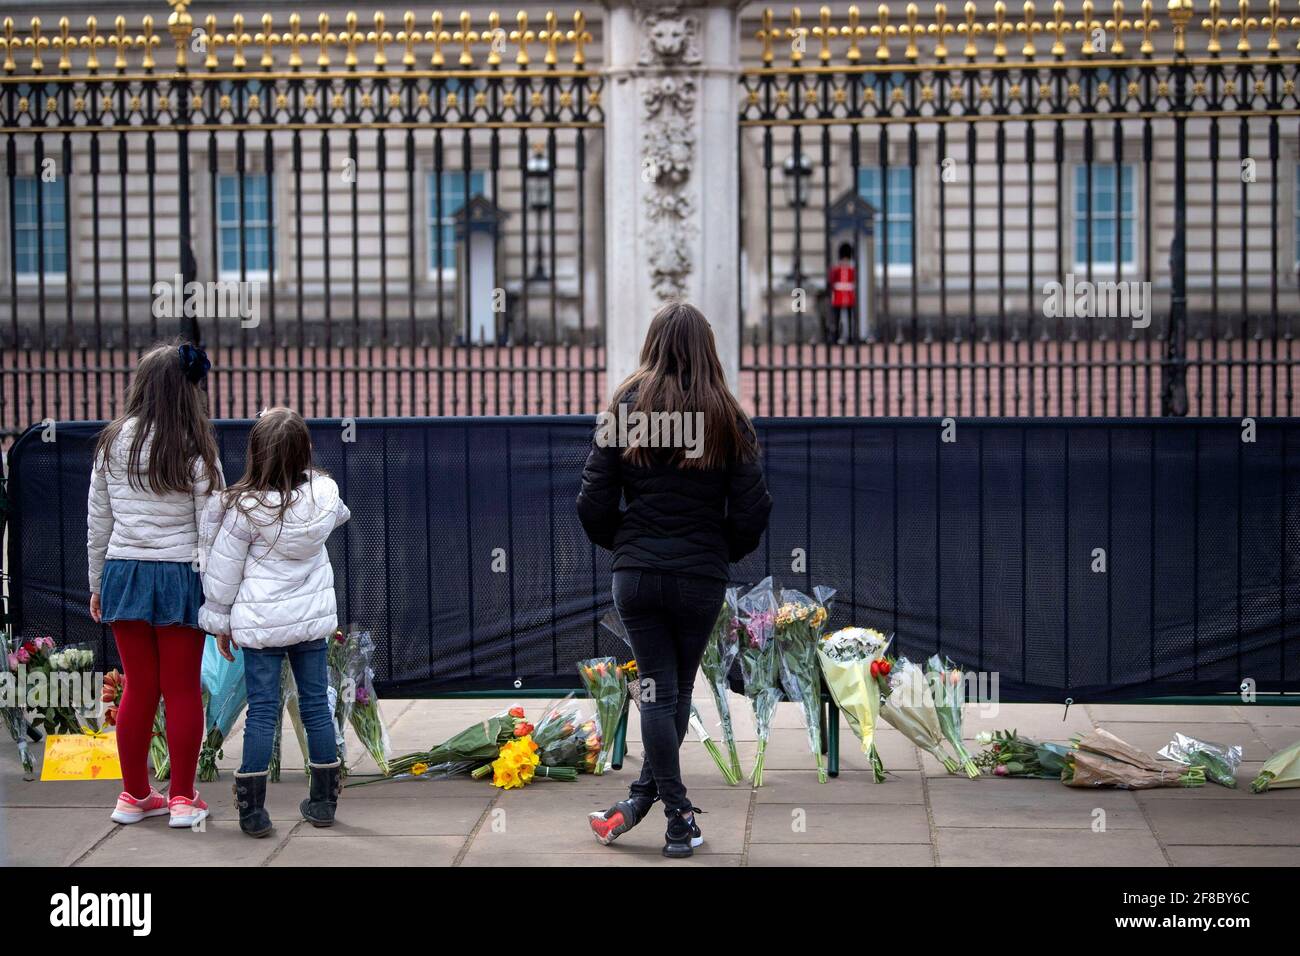 Trois filles regardent des fleurs et des messages laissés par le public à l'extérieur de Buckingham Palace, Londres, après la mort du duc d'Édimbourg à l'âge de 99 ans vendredi. Date de la photo: Mardi 13 avril 2021. Banque D'Images